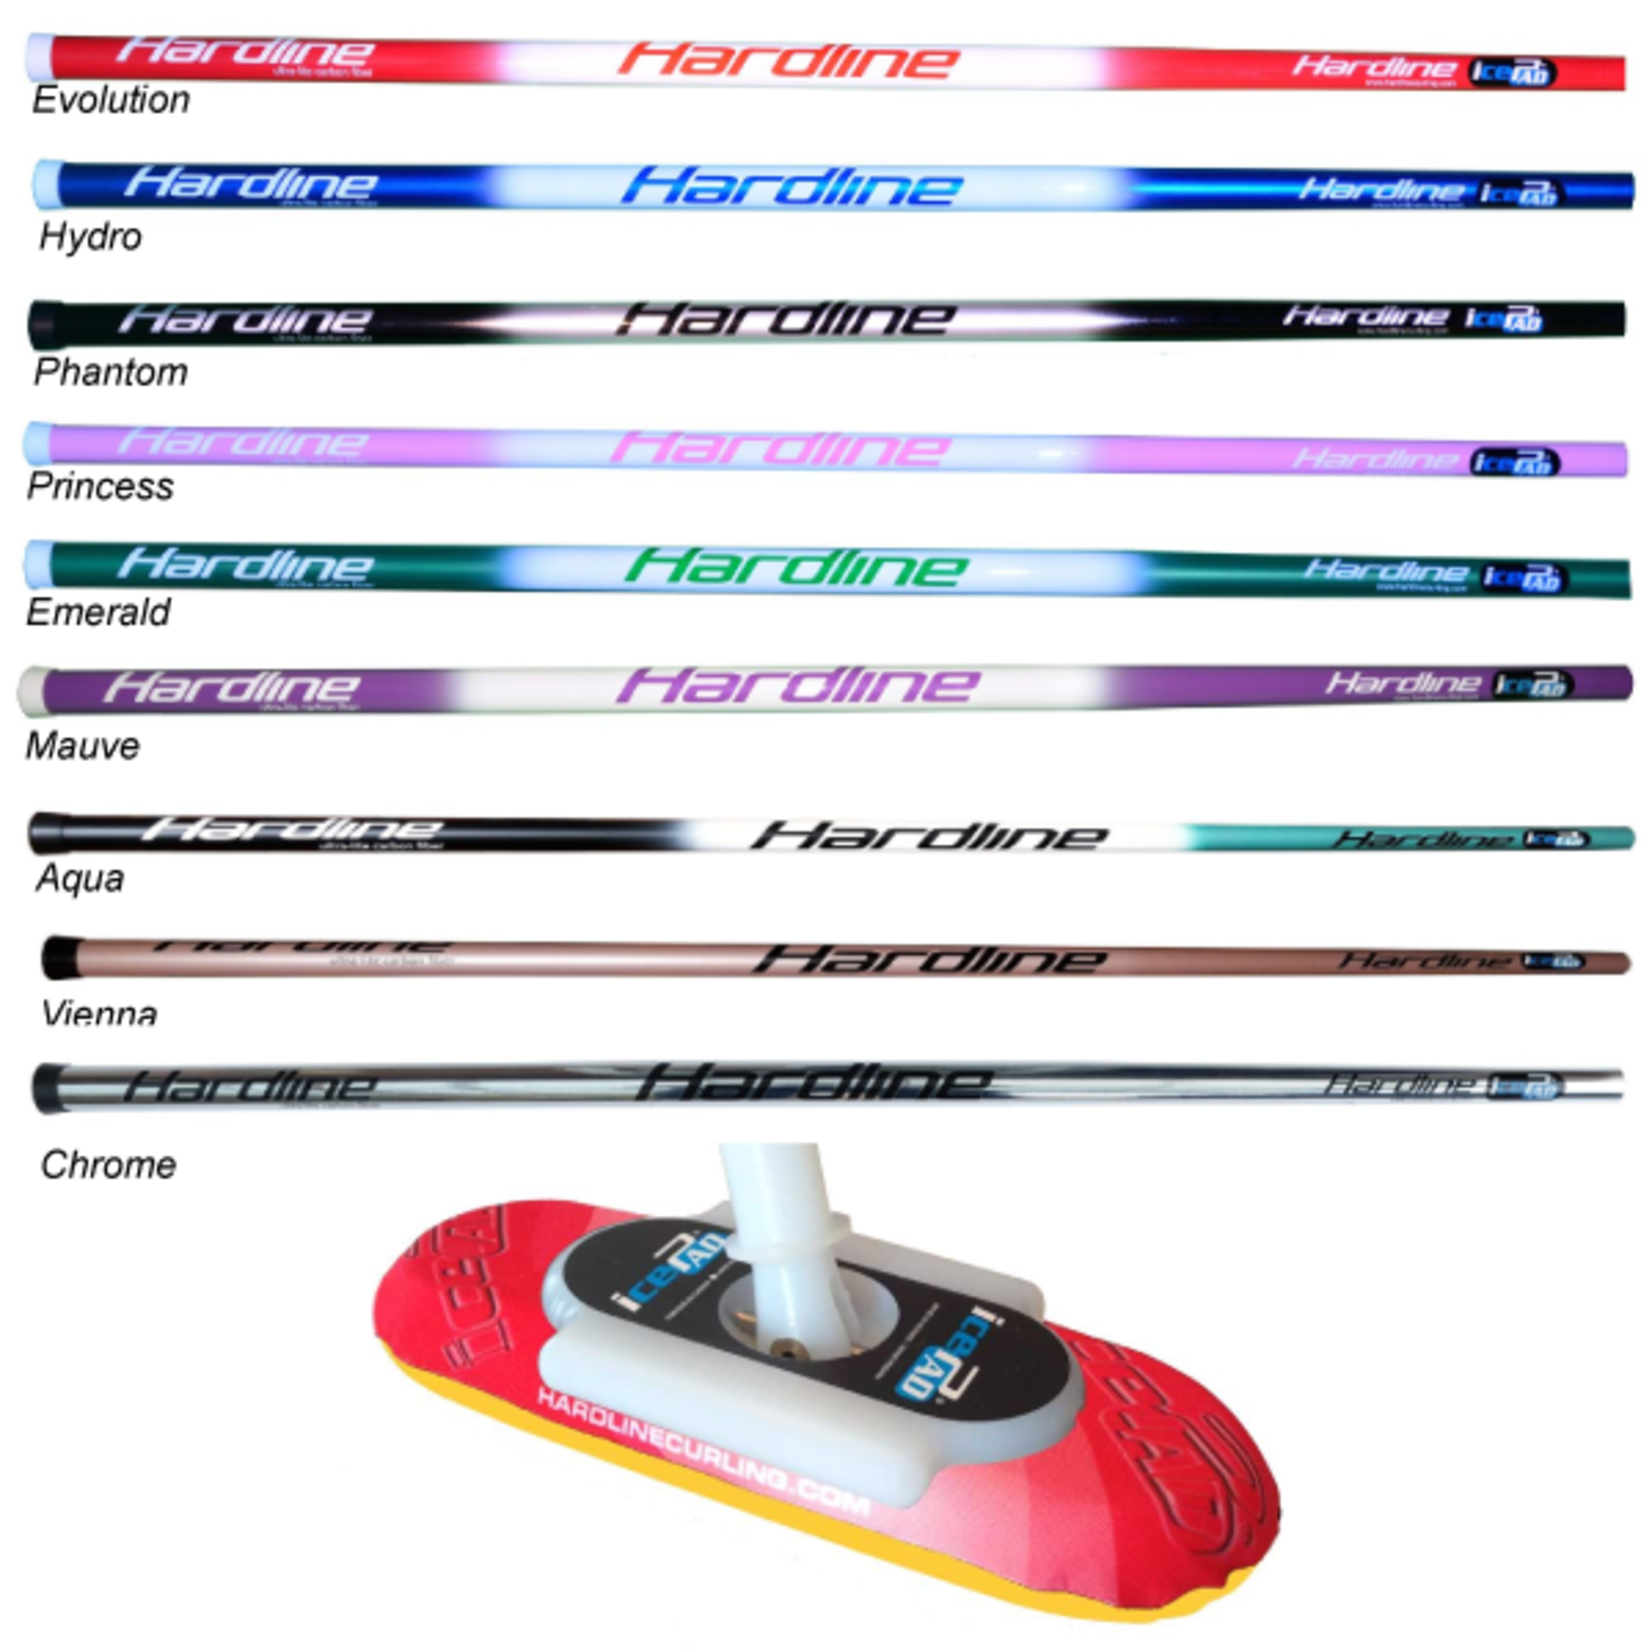 Hardline Hardline Curling Broom, Standard w/ Pro Cover